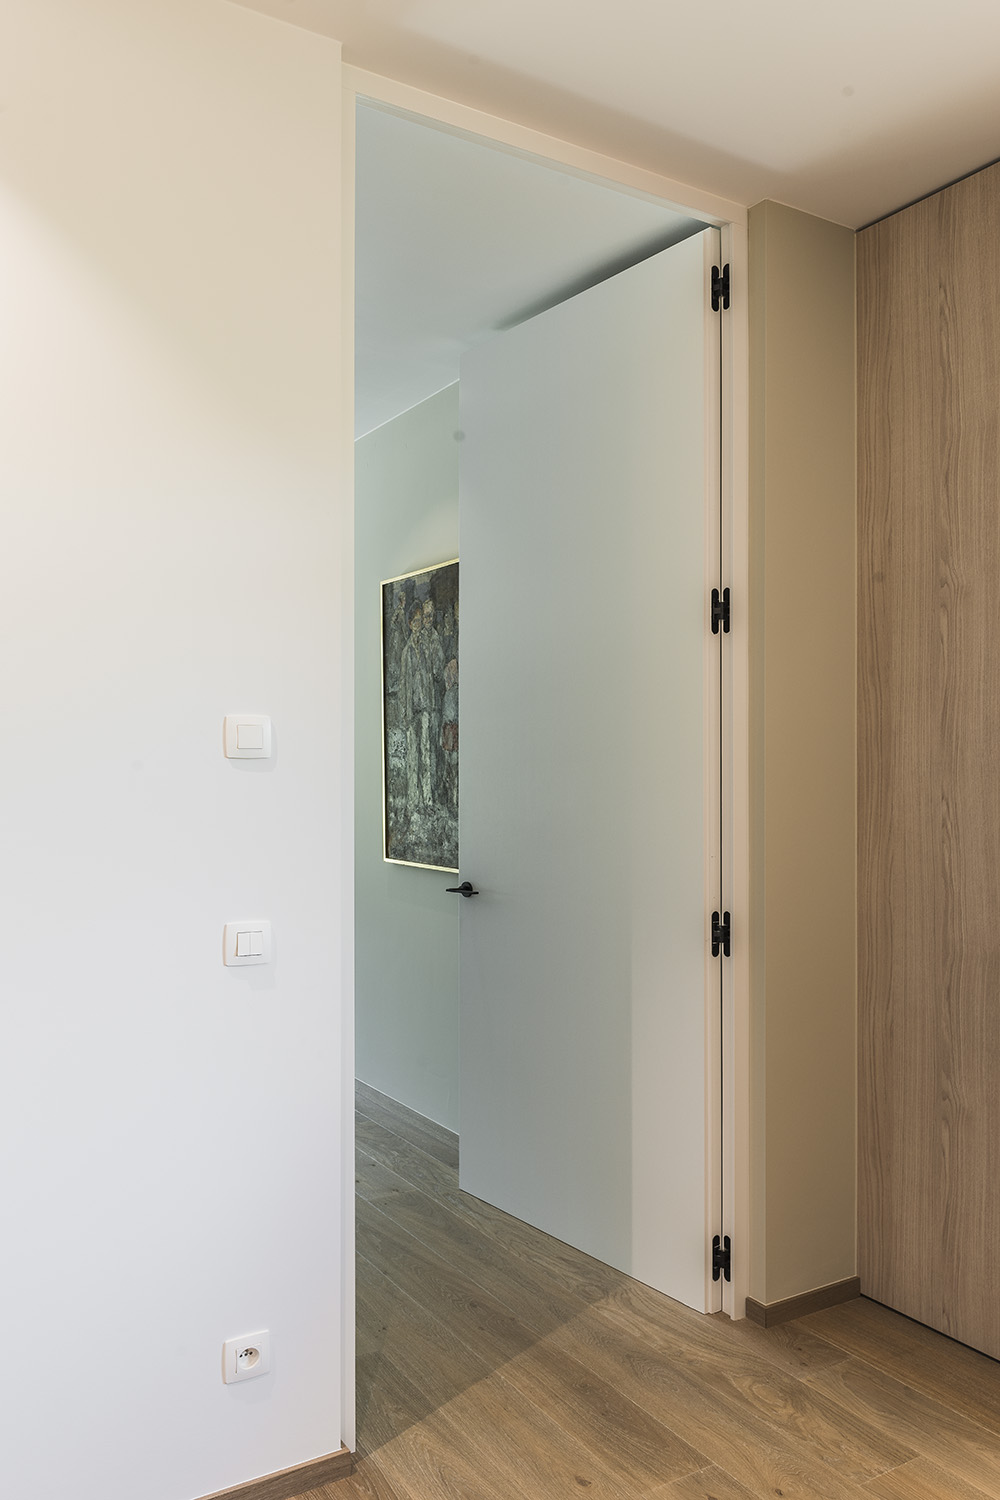 Integratie van onzichtbare scharnieren voor houten deuren die vlak liggen met de wand.